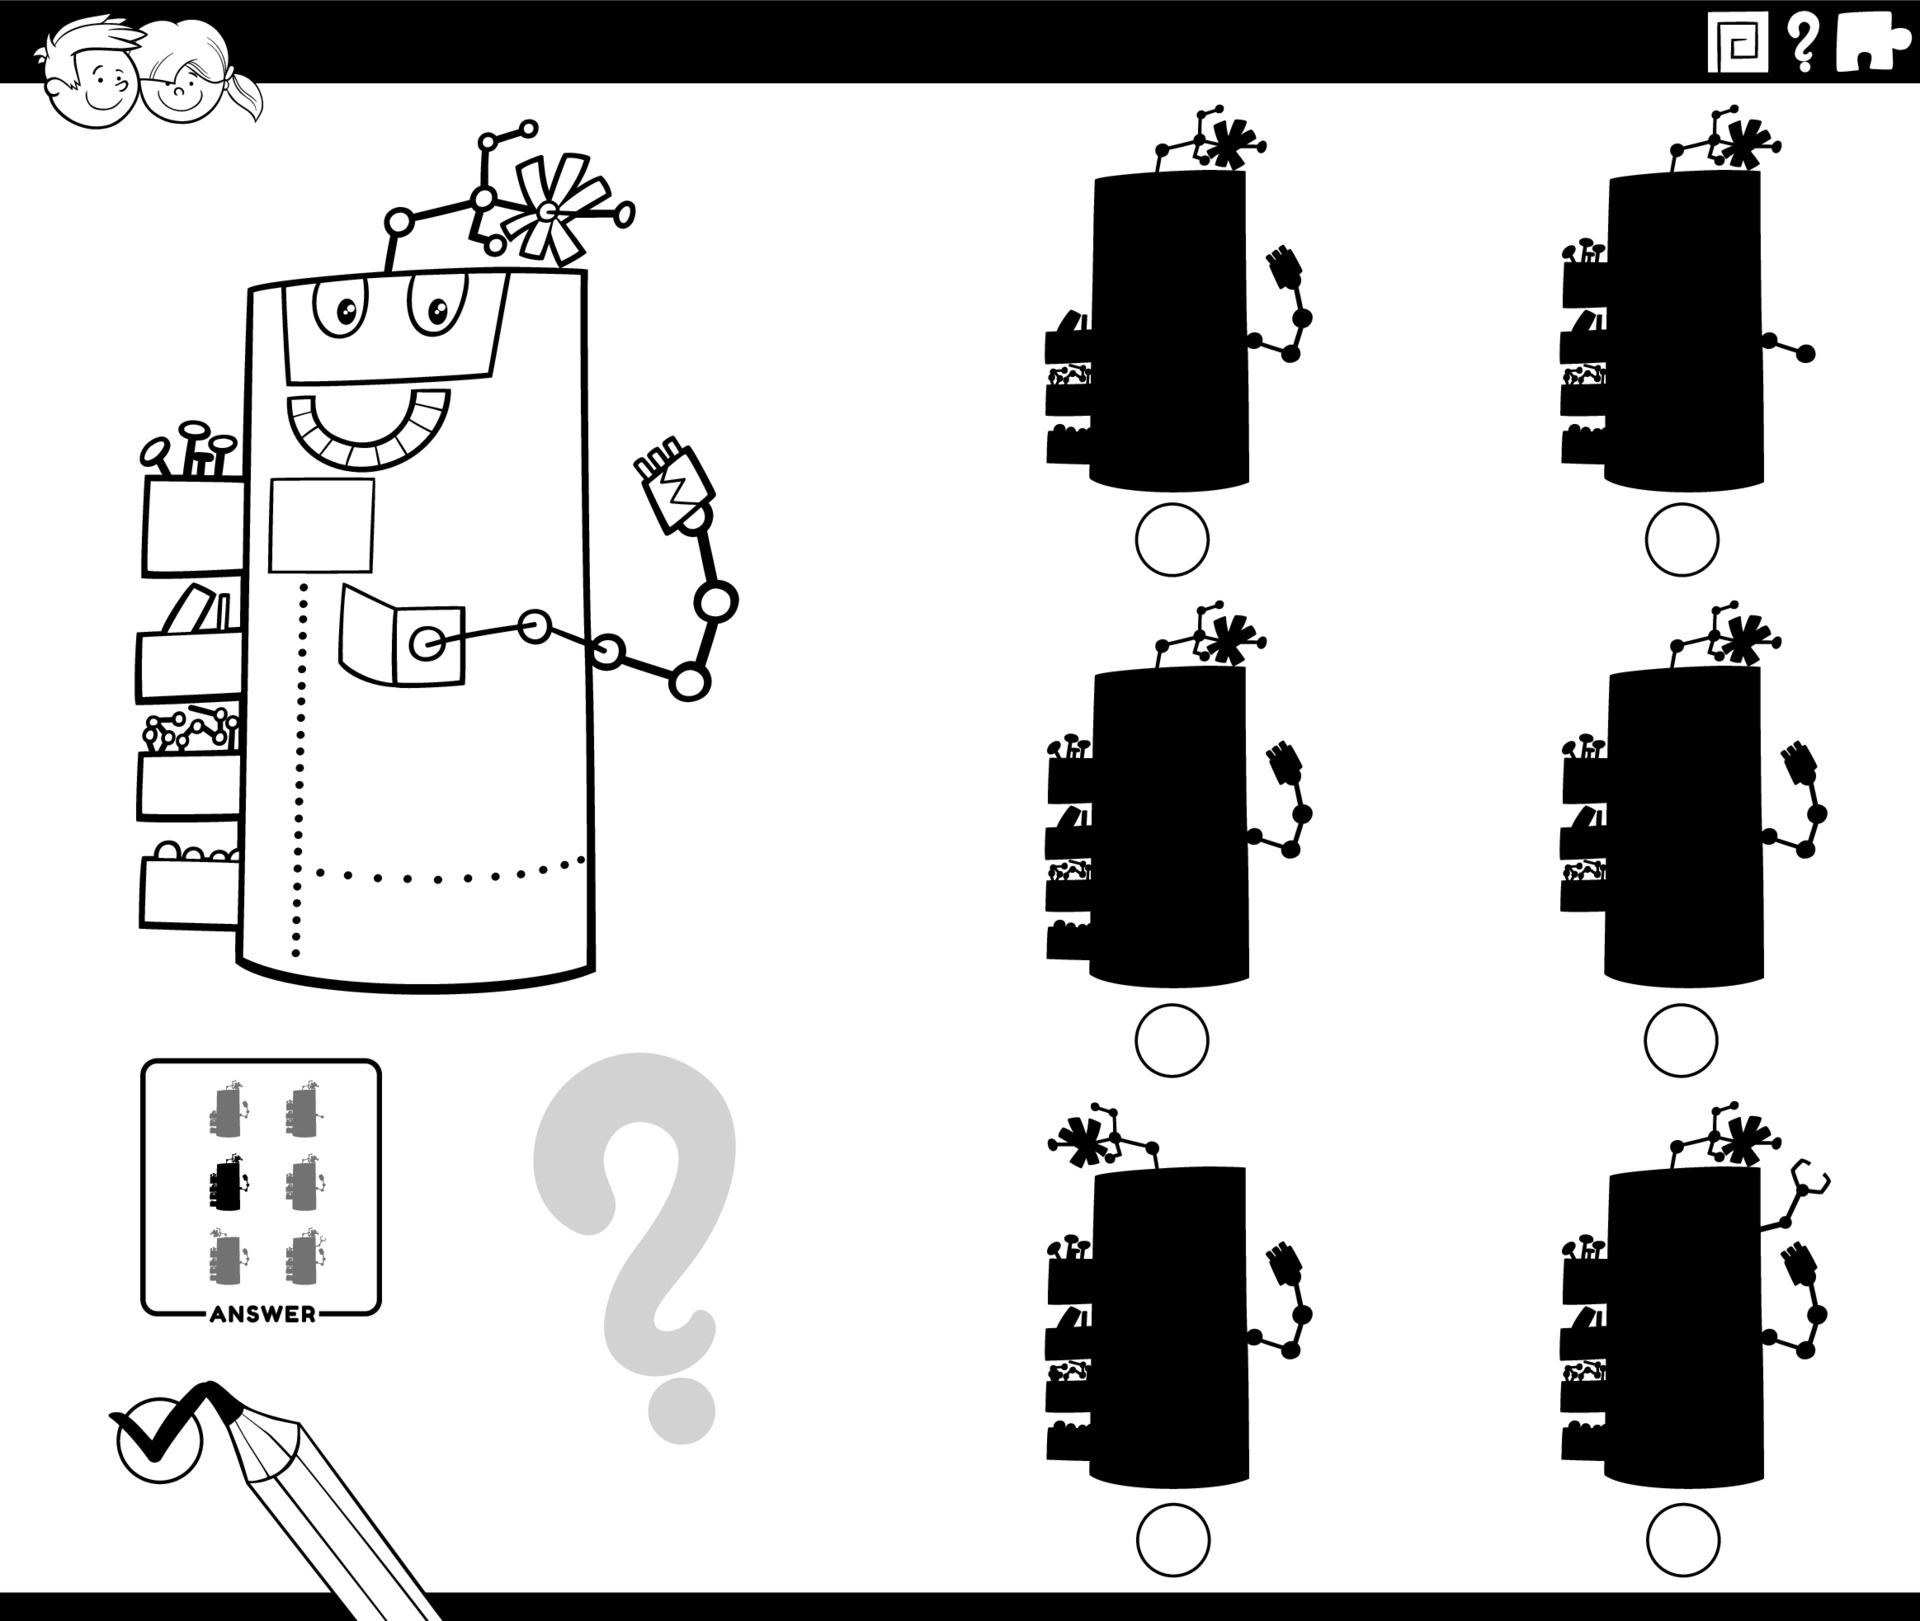 jogo de sombras com desenhos animados de robôs para colorir página do livro  6323784 Vetor no Vecteezy